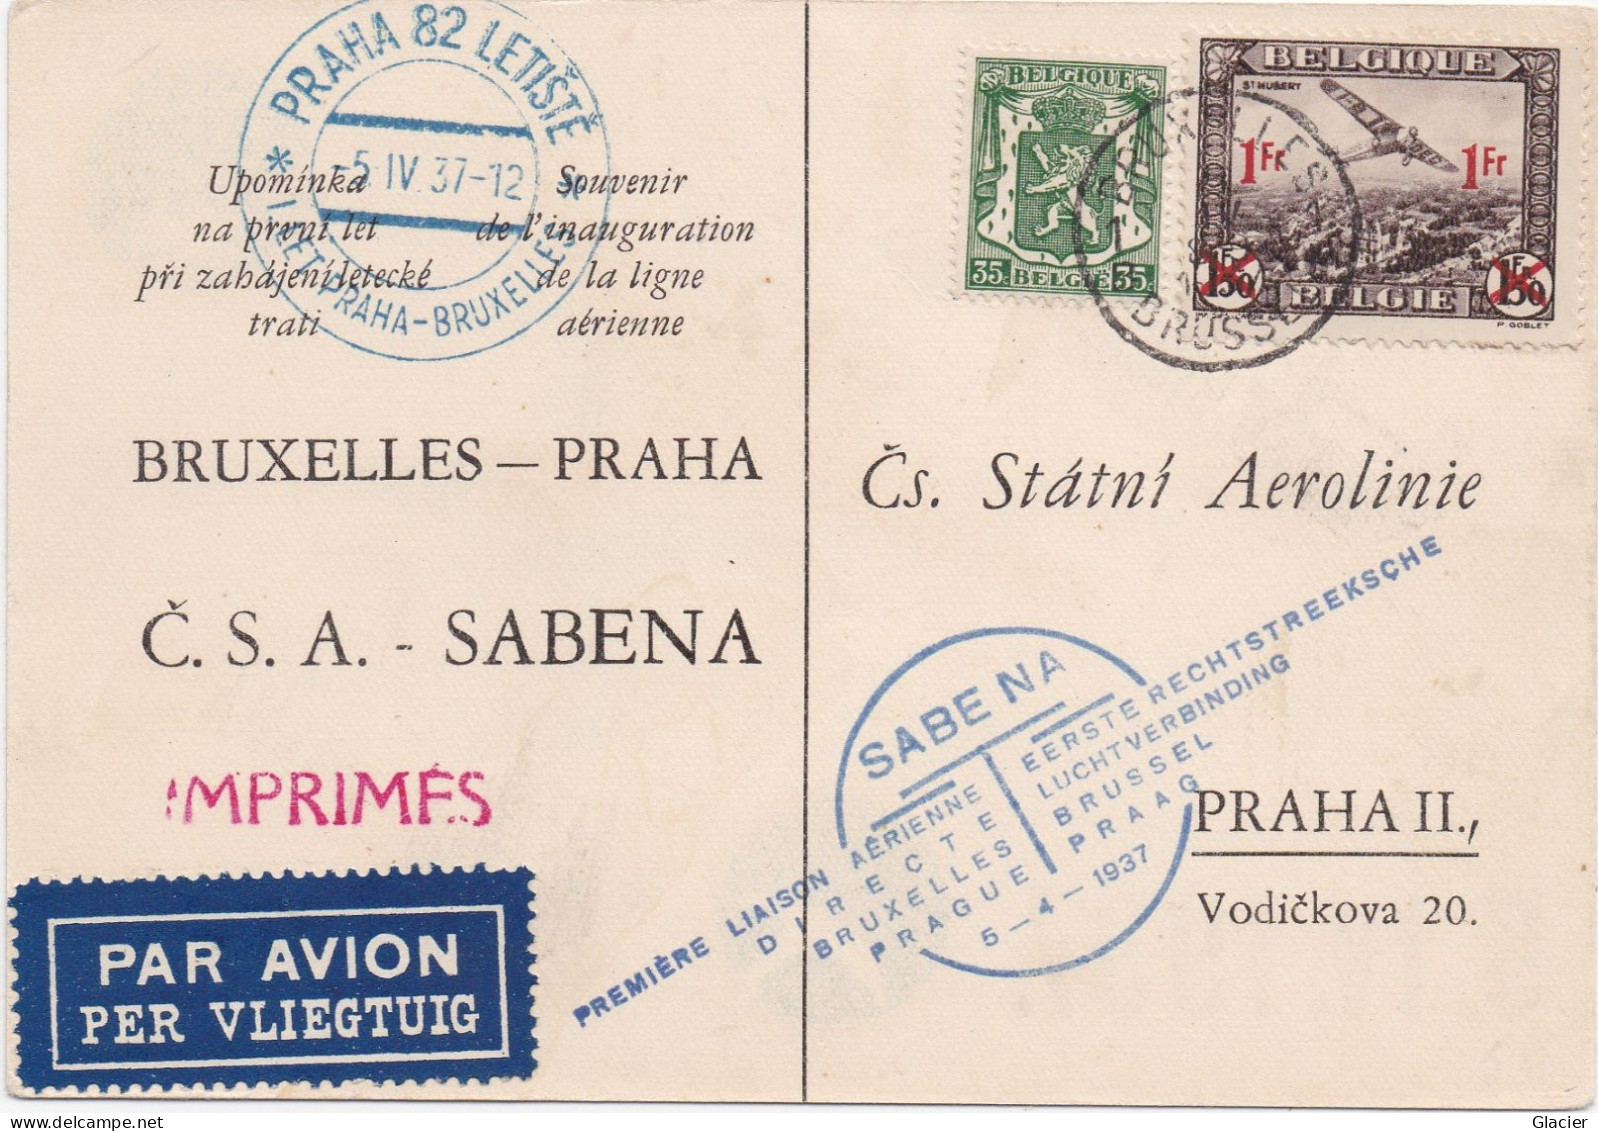 Sabena - Bruxelles-Praha - Liaison Aërienne 5-4-1937 - Č.S.A.-SABENA - Čs. Státni Aerolinie Praha II - Briefe U. Dokumente